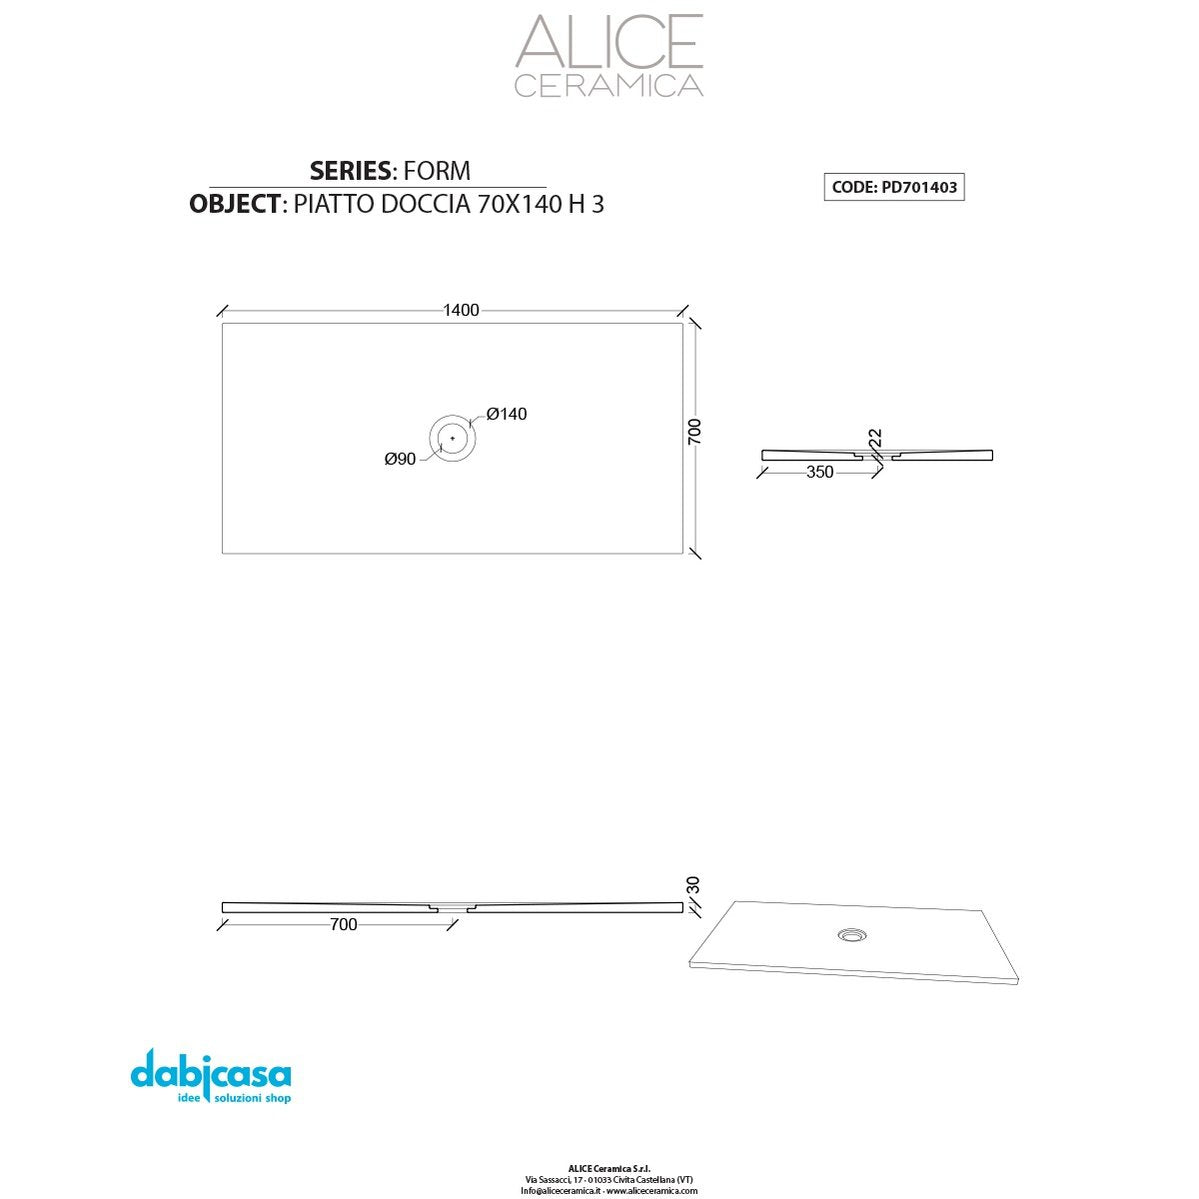 Piatto Doccia Alice Ceramica "Serie Form" 70x140 cm h 3 Colore Nero Opaco freeshipping - Dabicasa